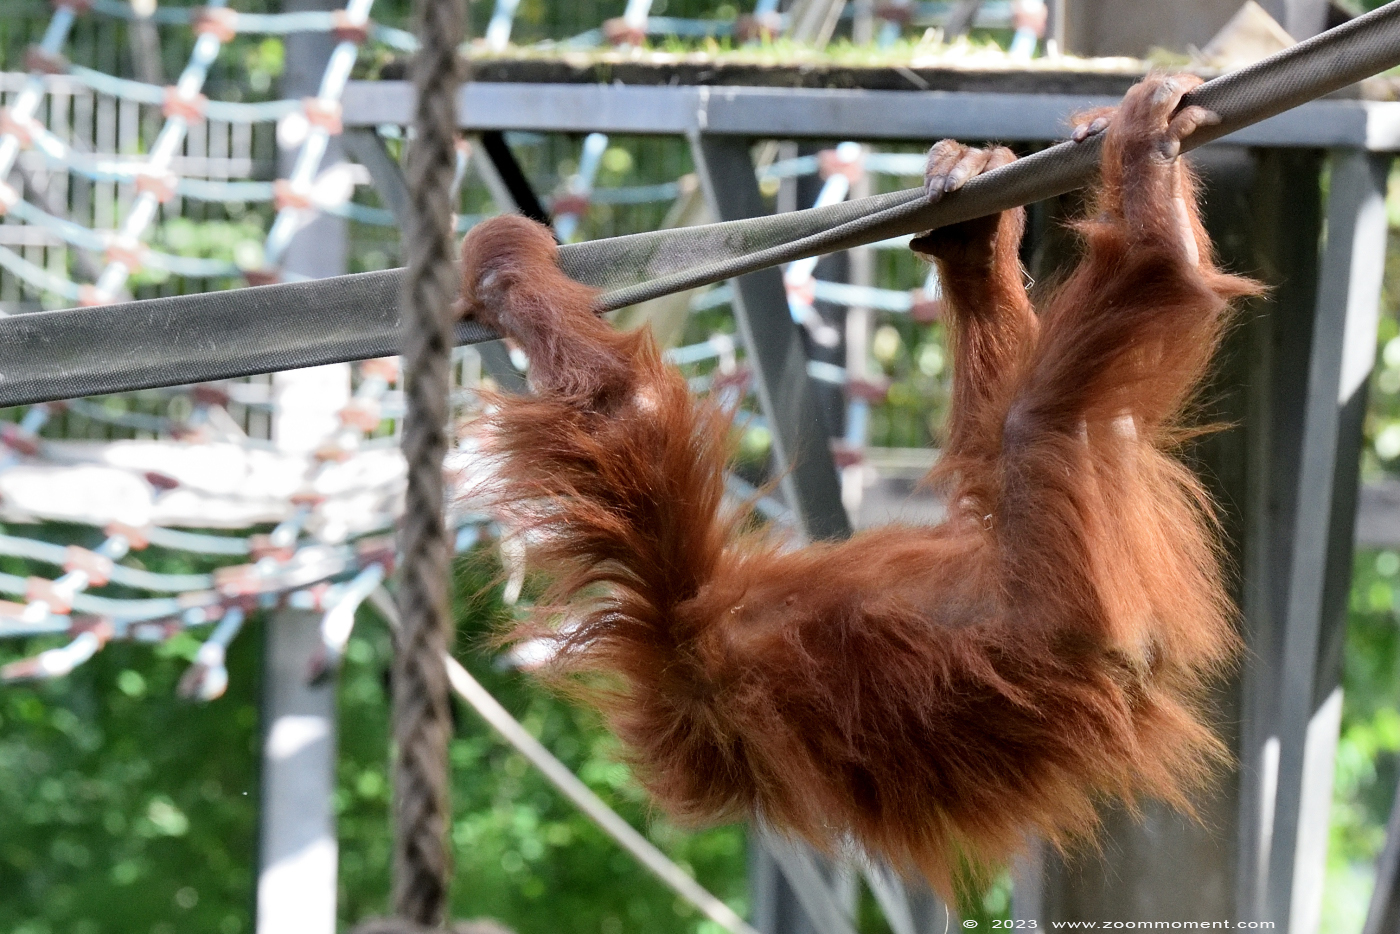 Sumatraanse orang oetan ( Pongo pygmaeus abelii ) Sumatran orangutan
Trefwoorden: Neunkircher Zoo Germany Sumatraanse orang oetan Pongo pygmaeus abelii Sumatran orangutan